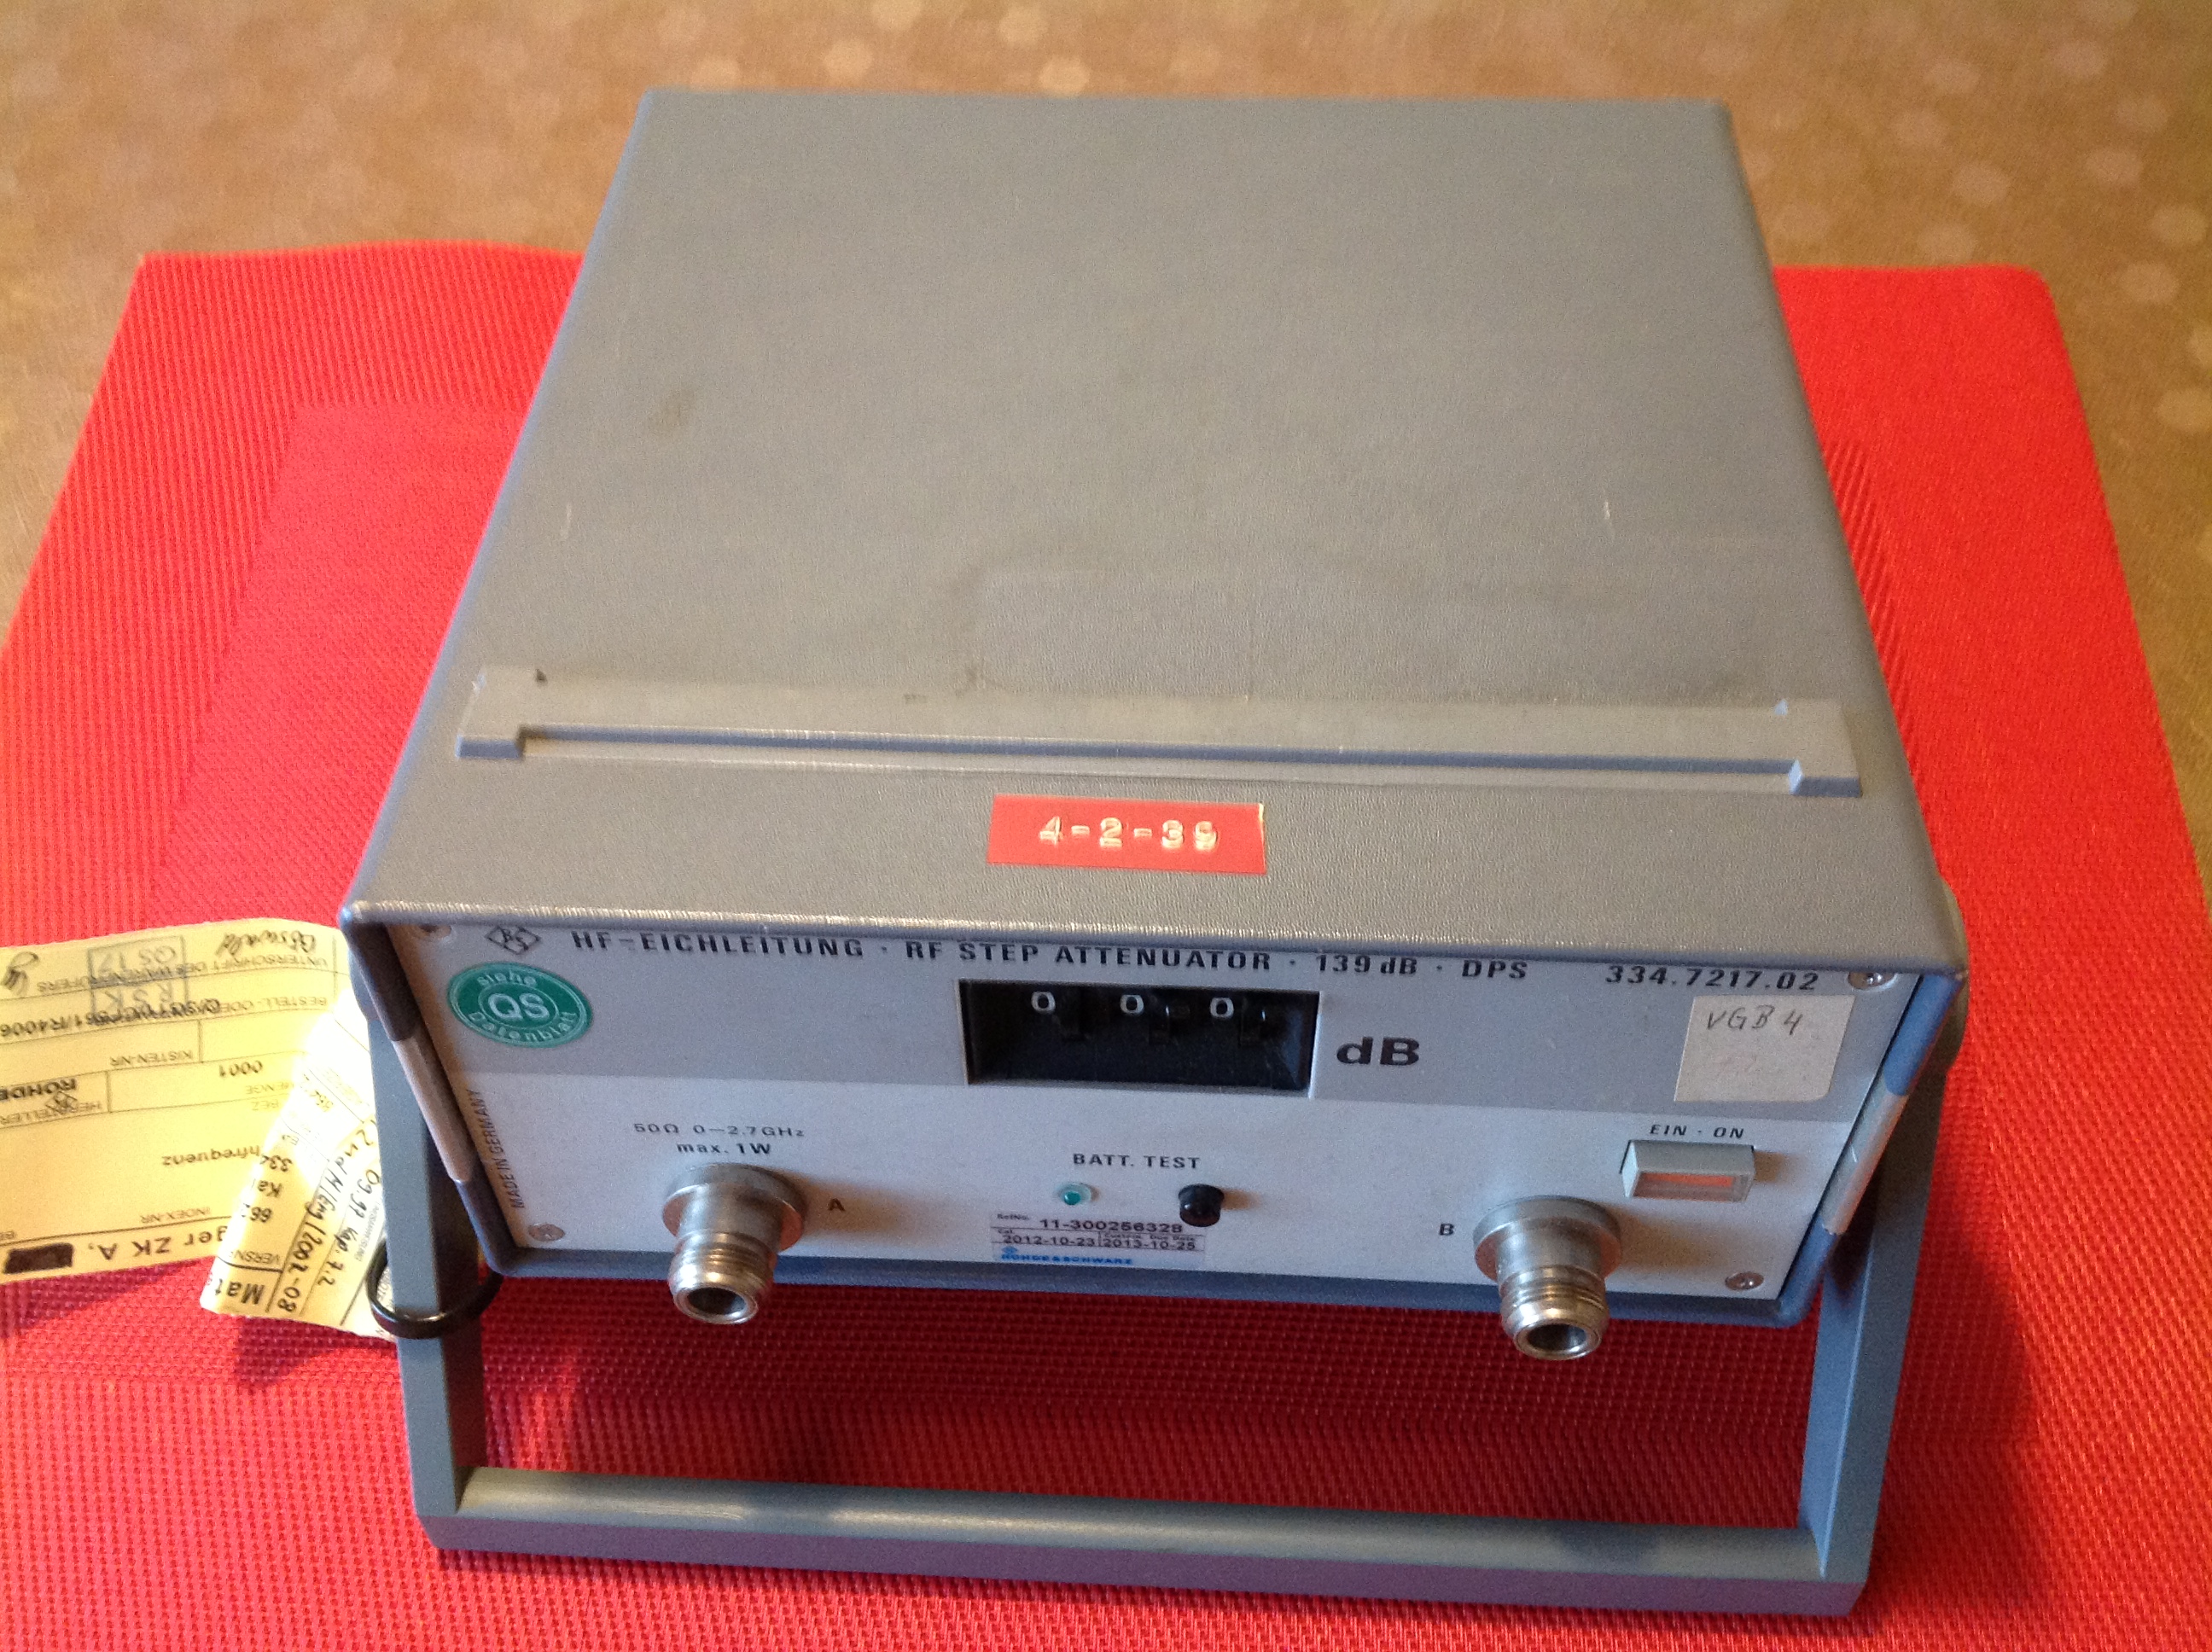 Rohde & Schwarz HF-Eichleitung / RF Step Attenuator / Hochfrequenz-Kalibriergerät 139 dB DPS